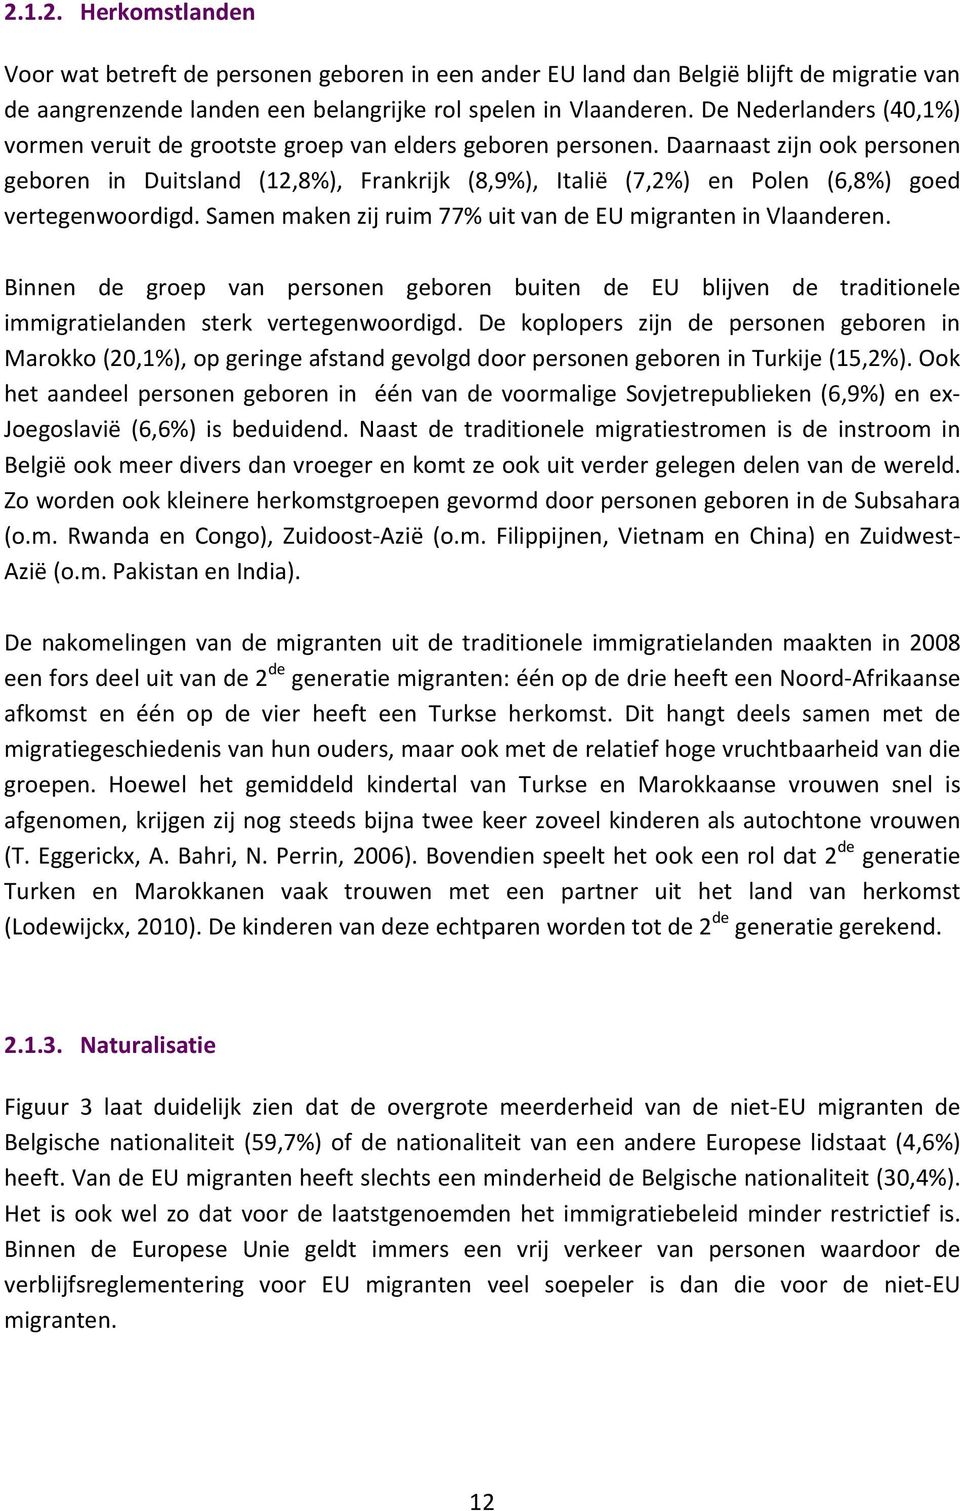 Daarnaast zijn ook personen geboren in Duitsland (12,8%), Frankrijk (8,9%), Italië (7,2%) en Polen (6,8%) goed vertegenwoordigd. Samen maken zij ruim 77% uit van de EU migranten in Vlaanderen.